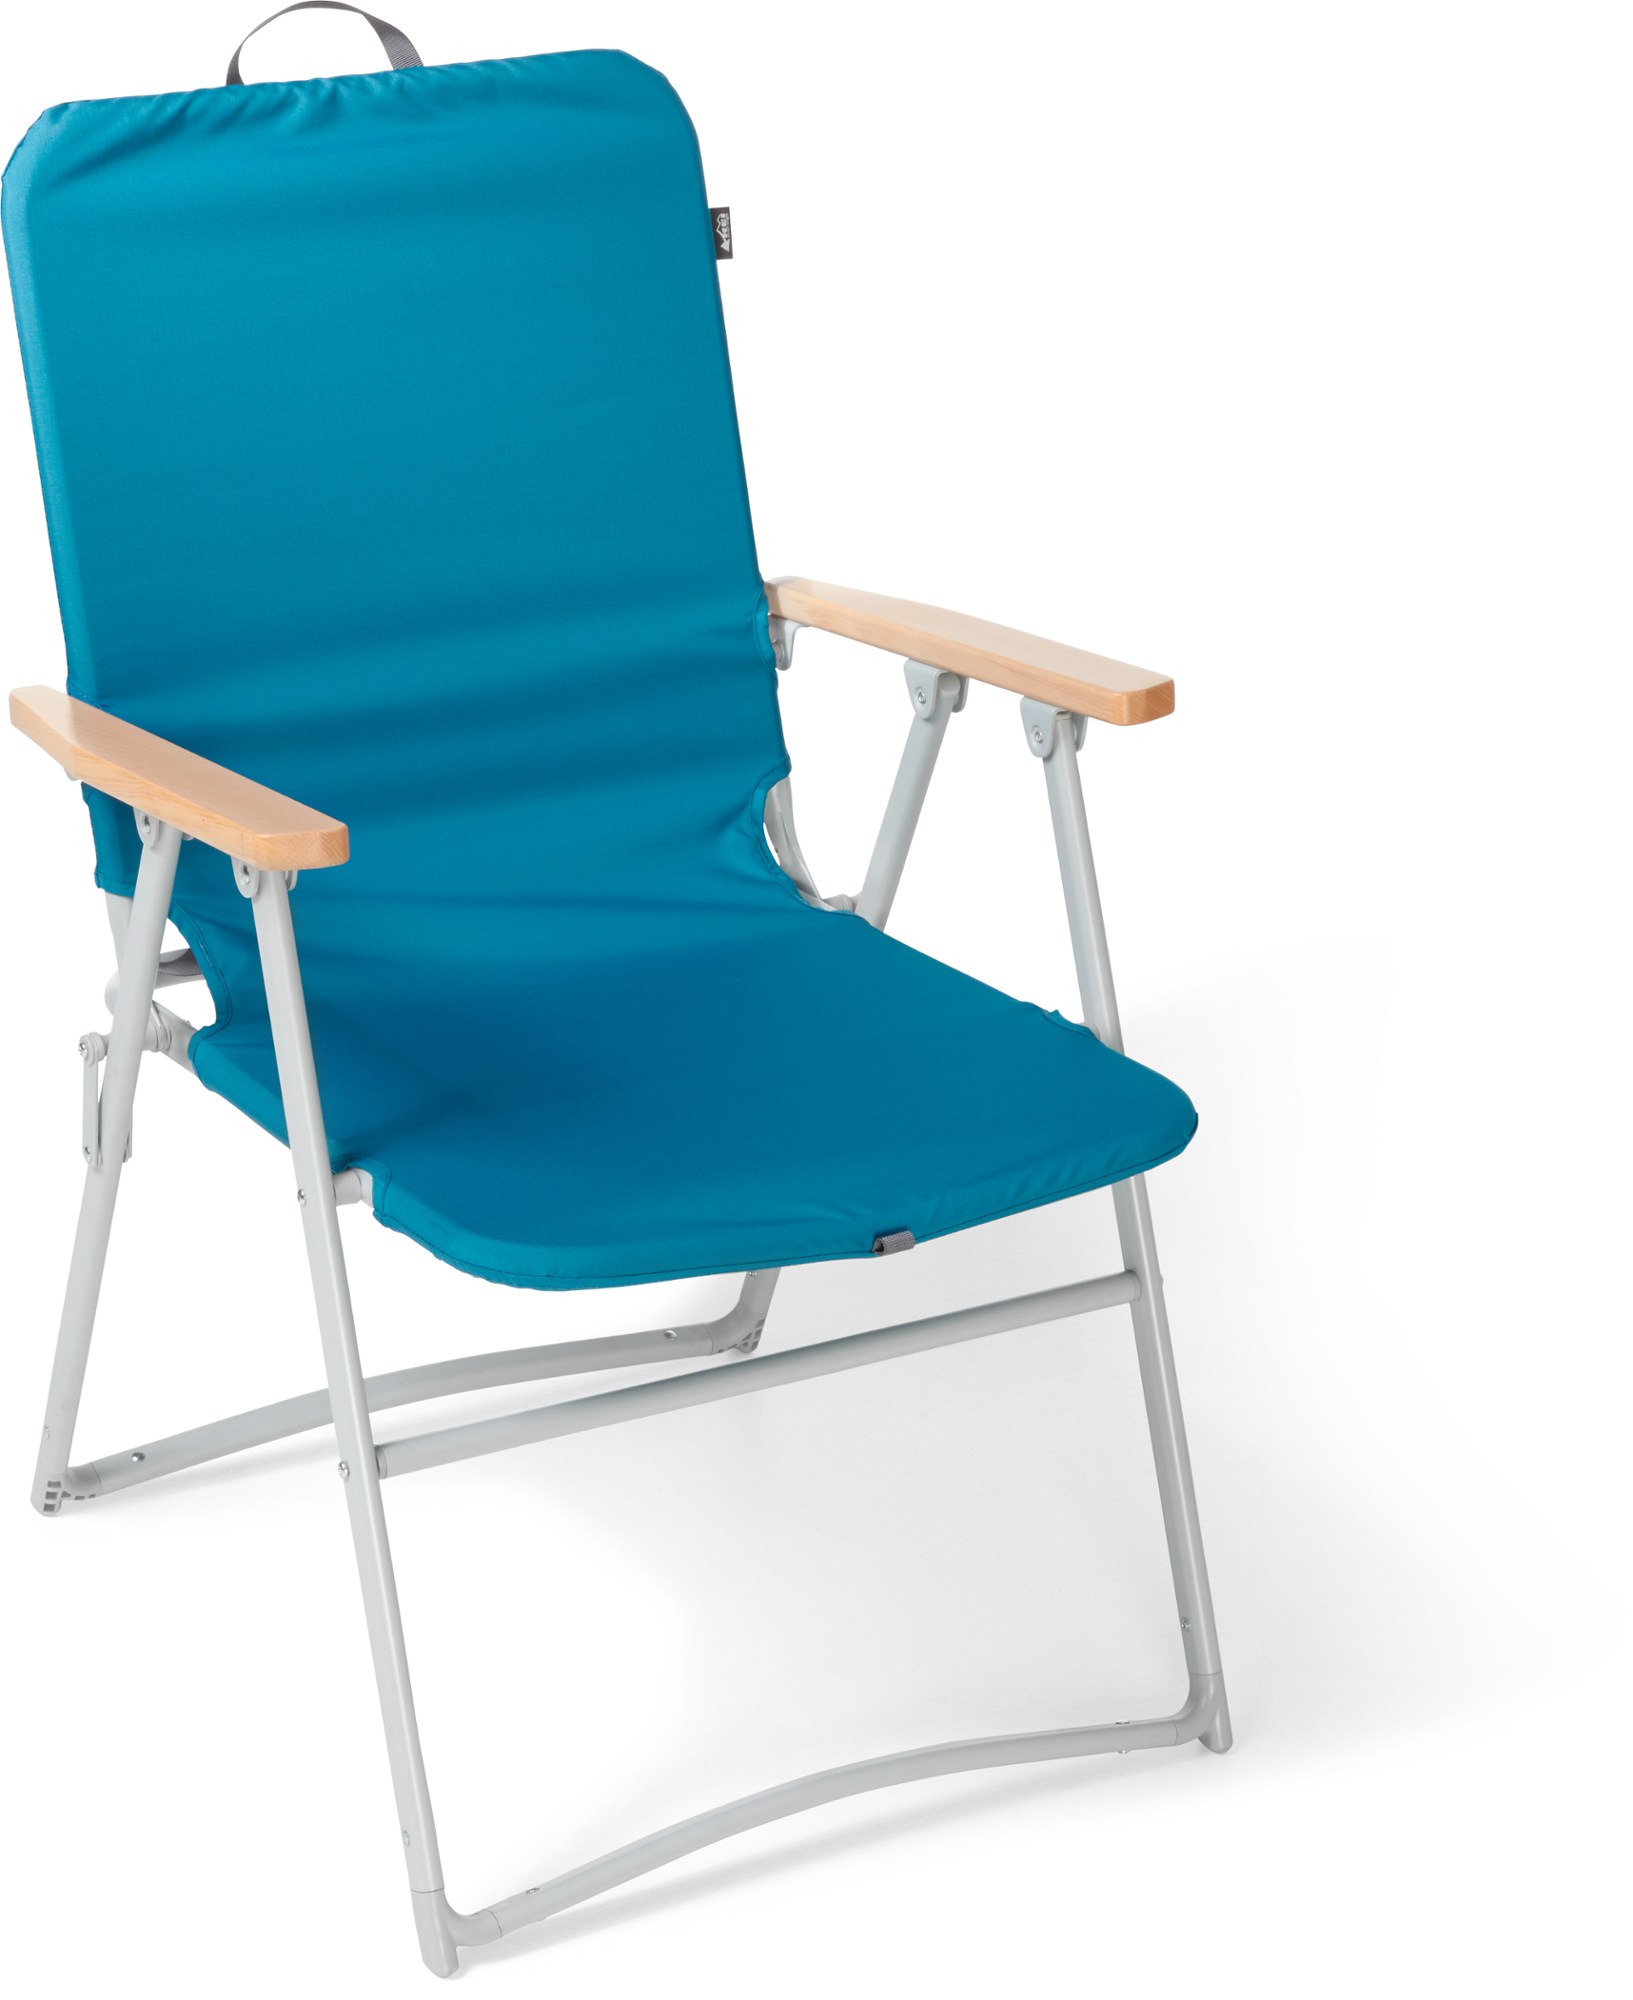 цена Внешний стул для лужайки REI Co-op, синий